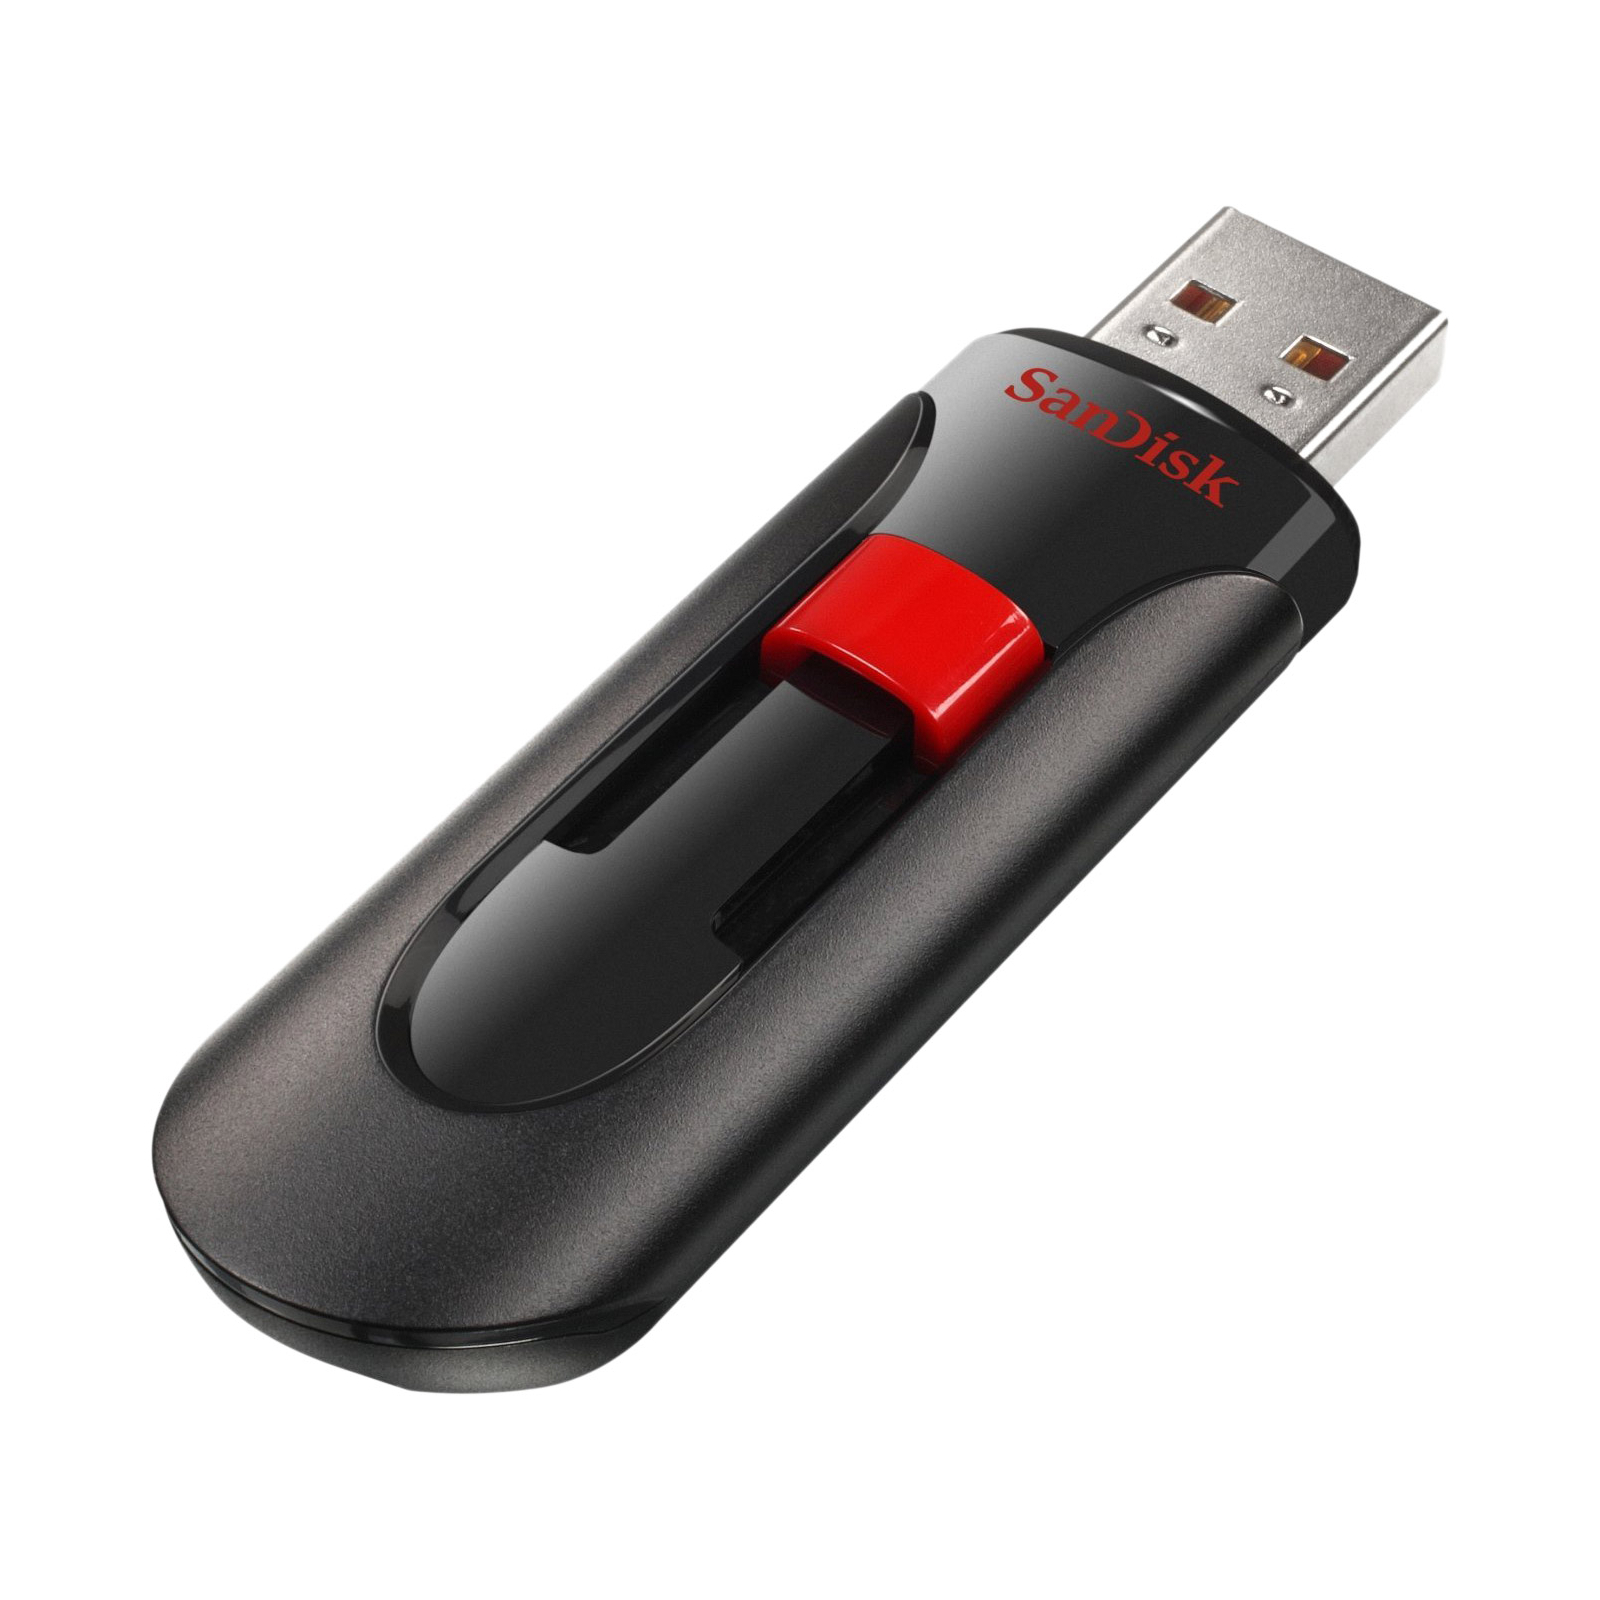 USB флеш накопичувач SanDisk 128GB Cruzer Glide Black USB 3.0 (SDCZ600-128G-G35) зображення 3